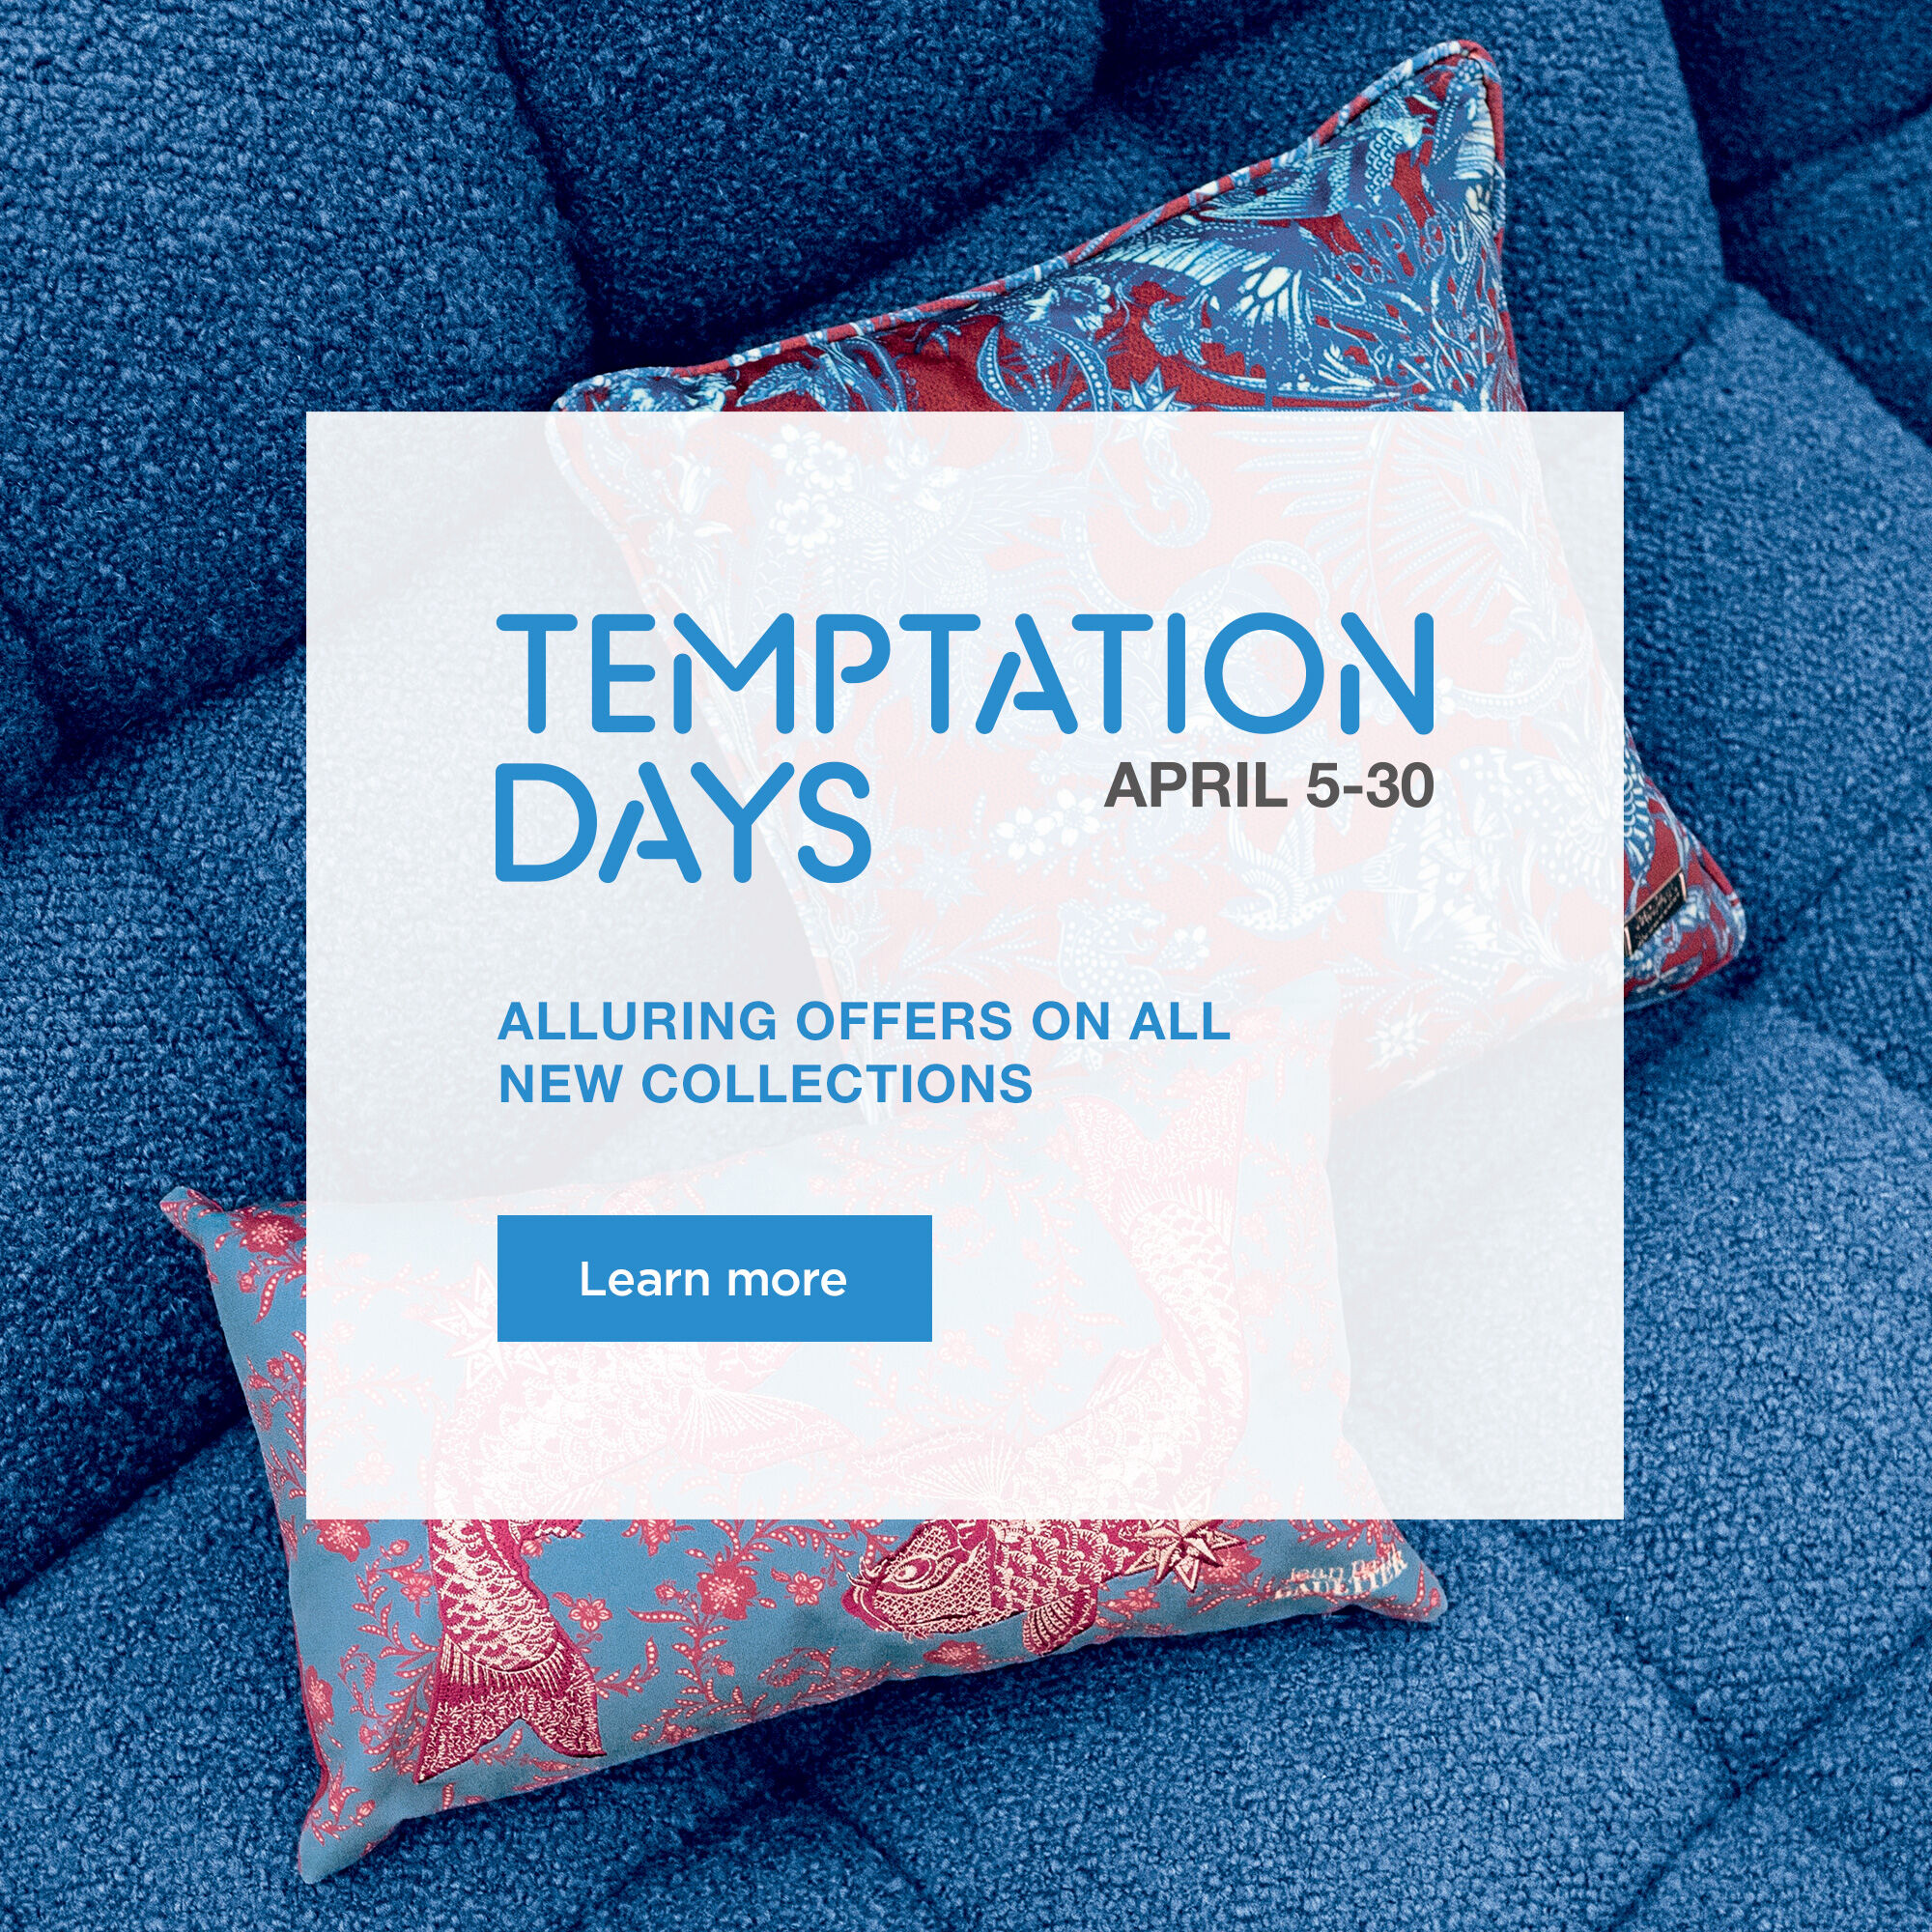 The Temptation Days, until April 30th